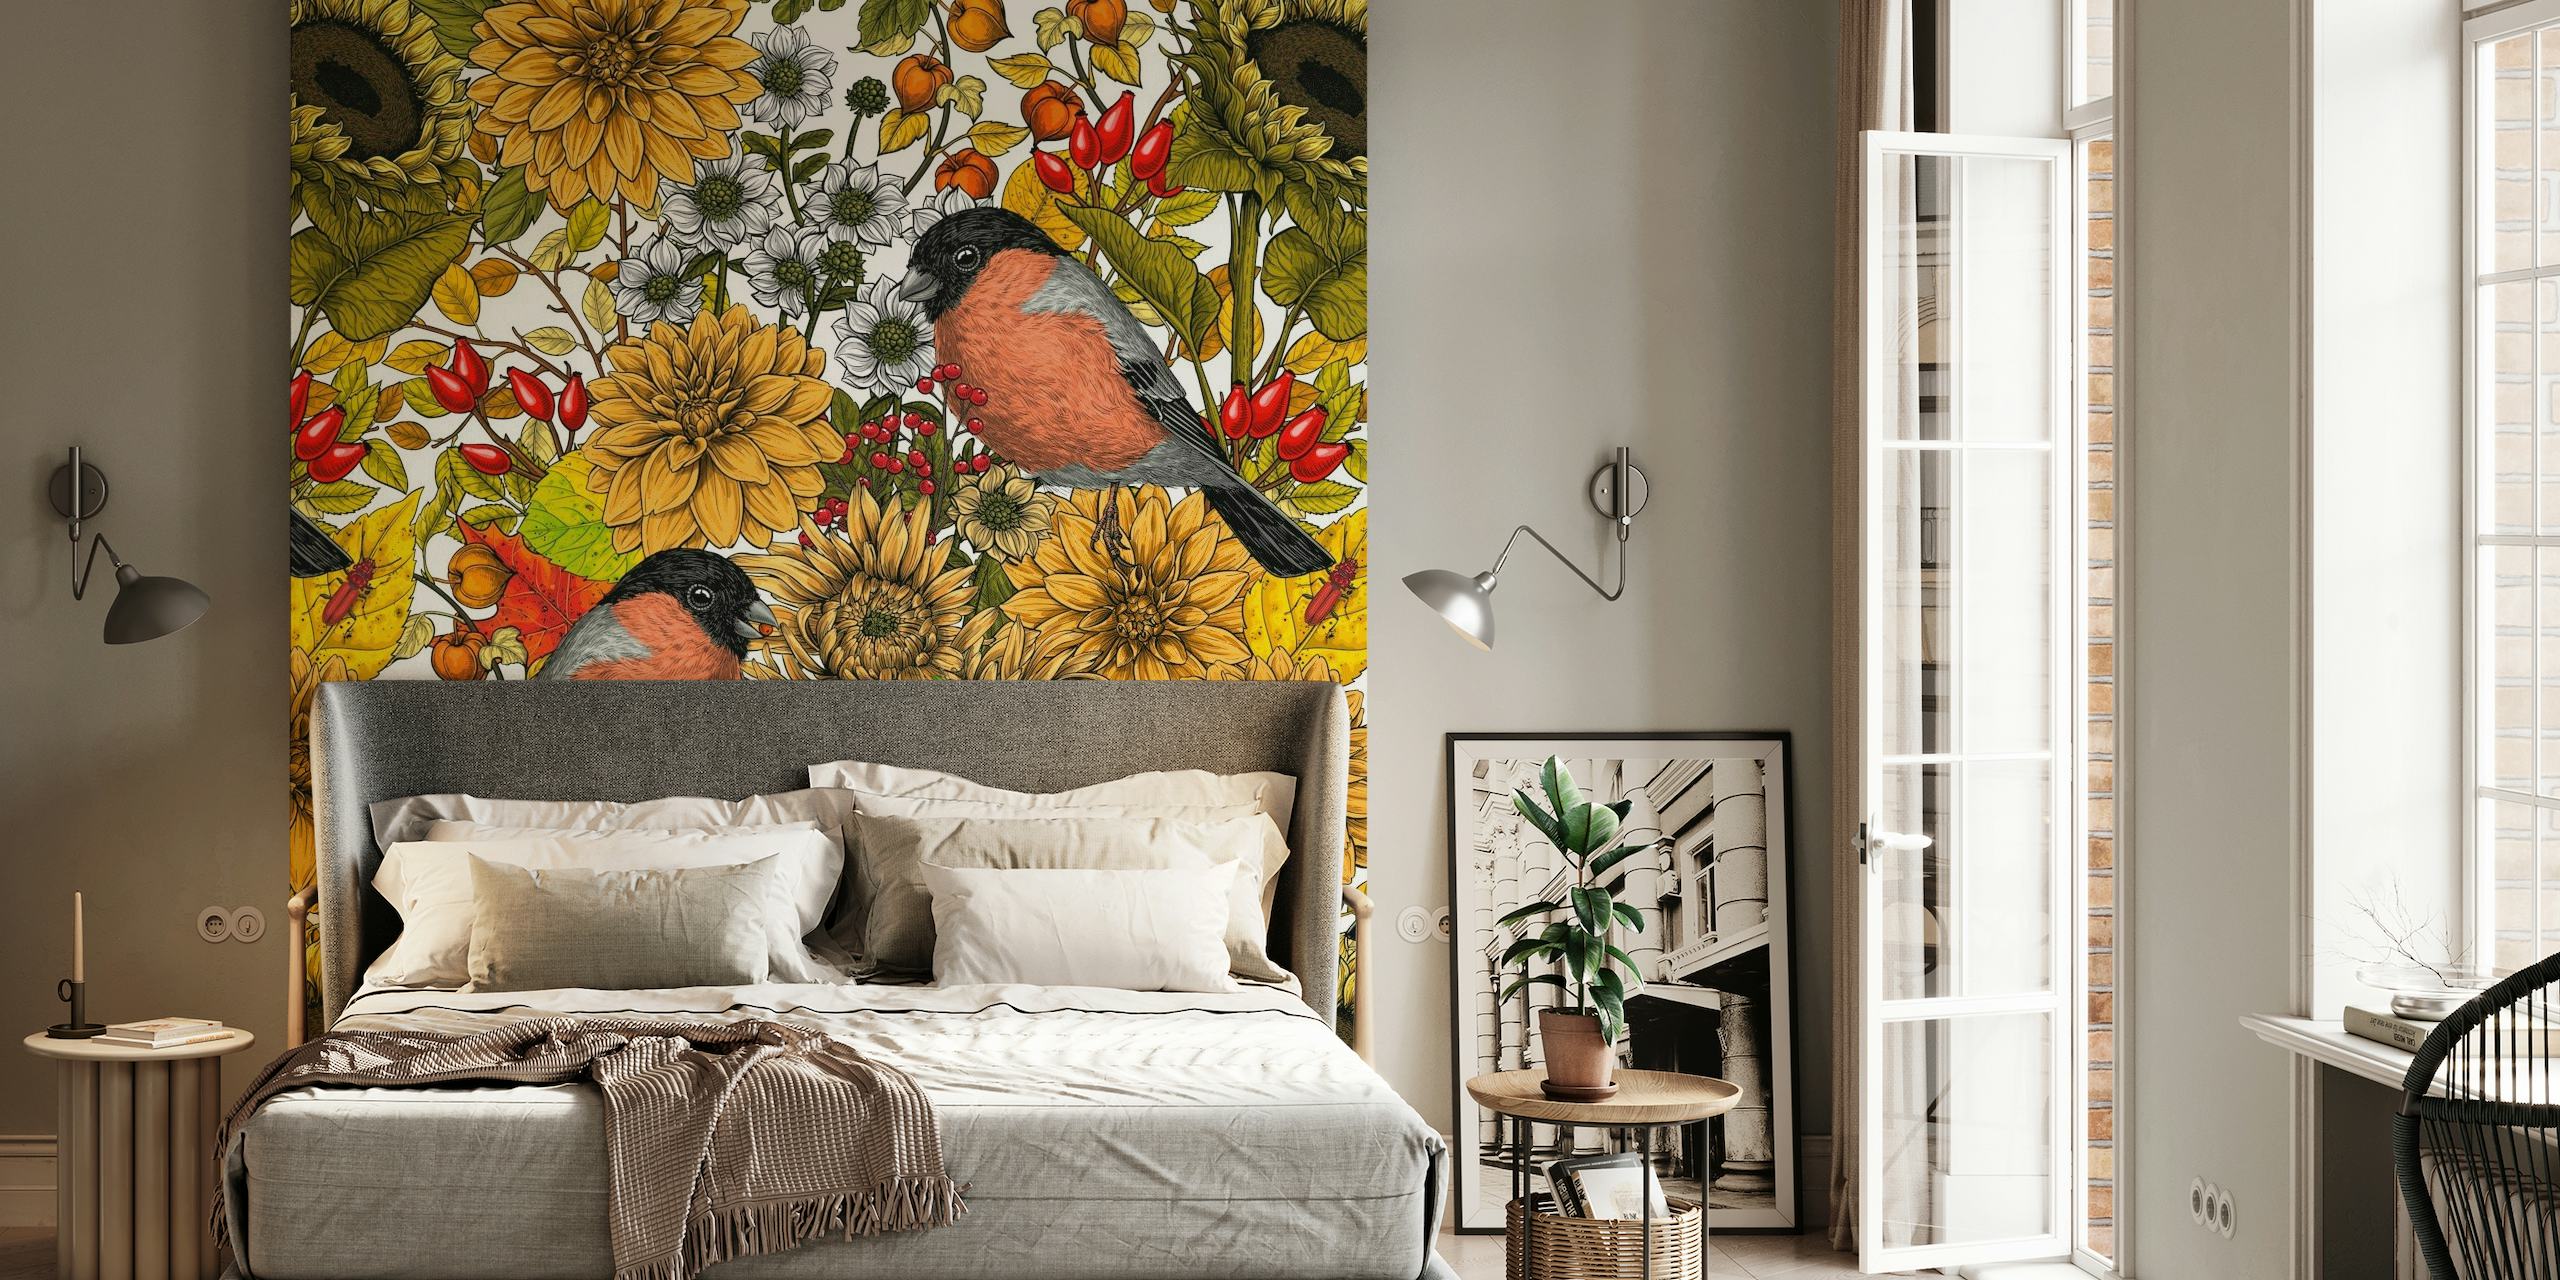 Fototapeta z motywem jesiennego ogrodu, przedstawiająca słoneczniki i ptaki